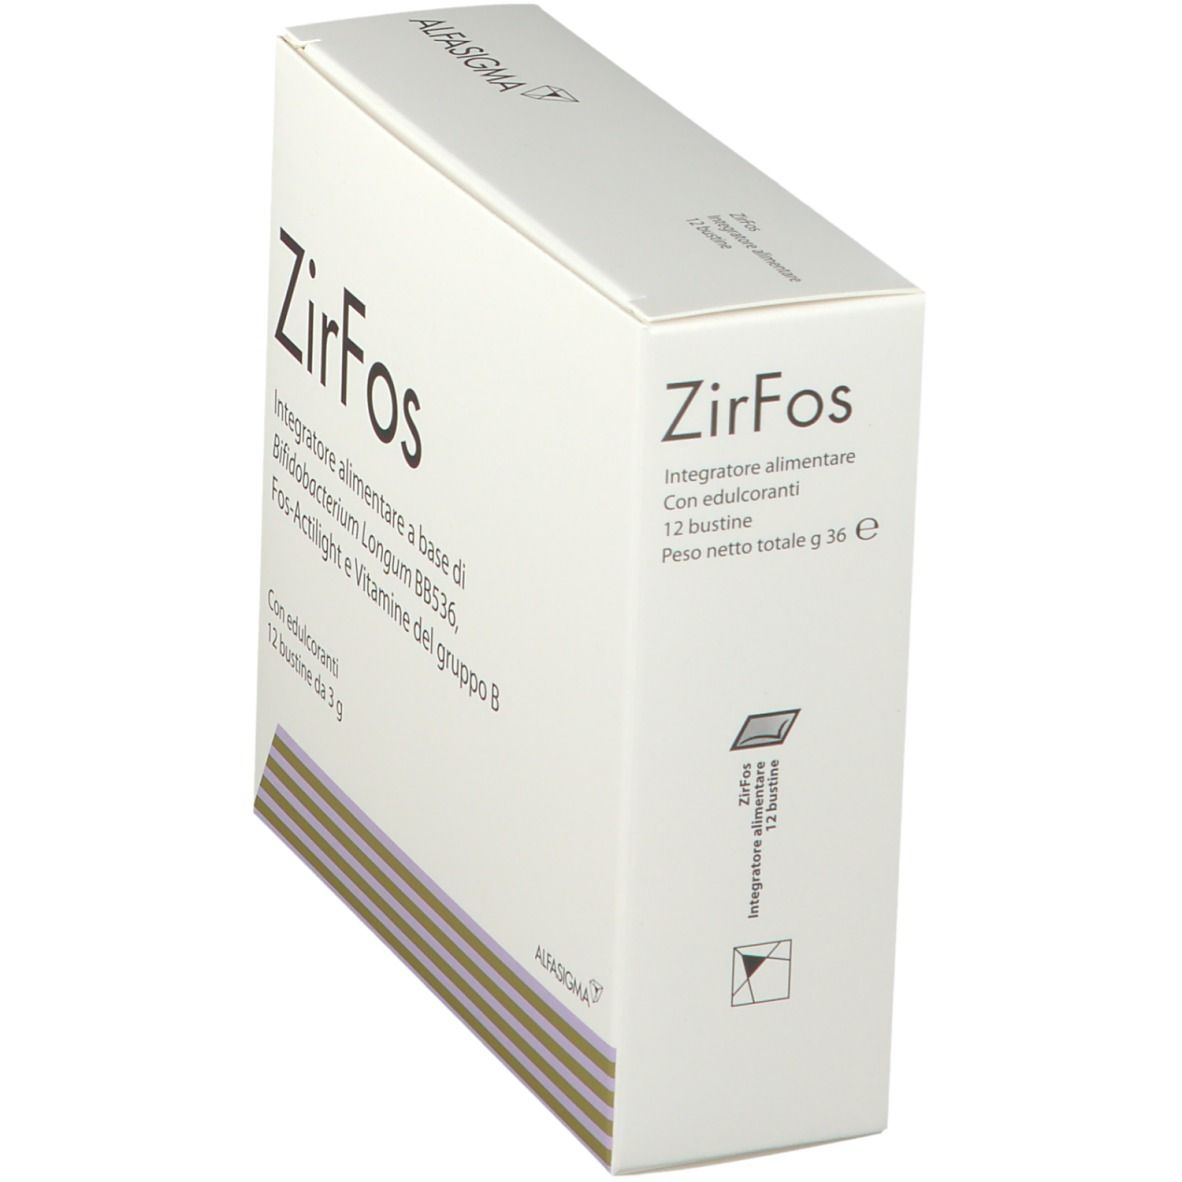 ZirFos